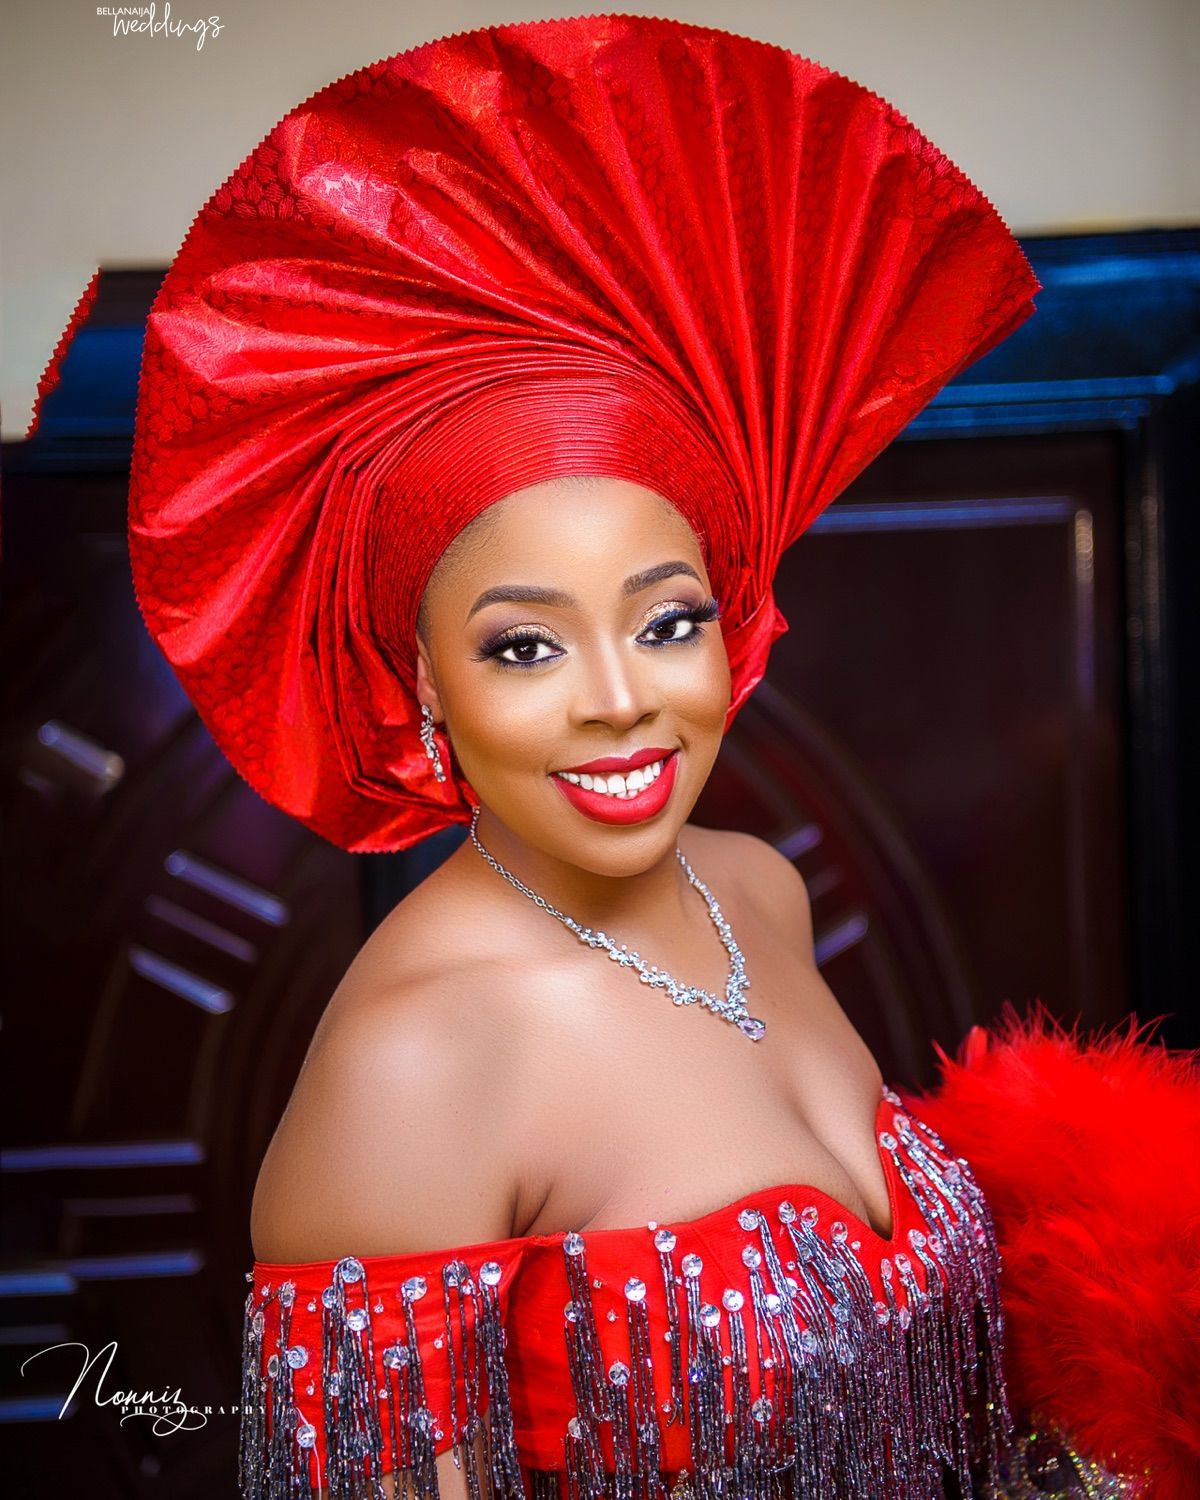 Vestidos nigerianos para novias nigerianas, Cabello rojo y Sesión de fotos: cabello rojo,  Chicas hermosas,  Sesión de fotos,  vestidos nigerianos  